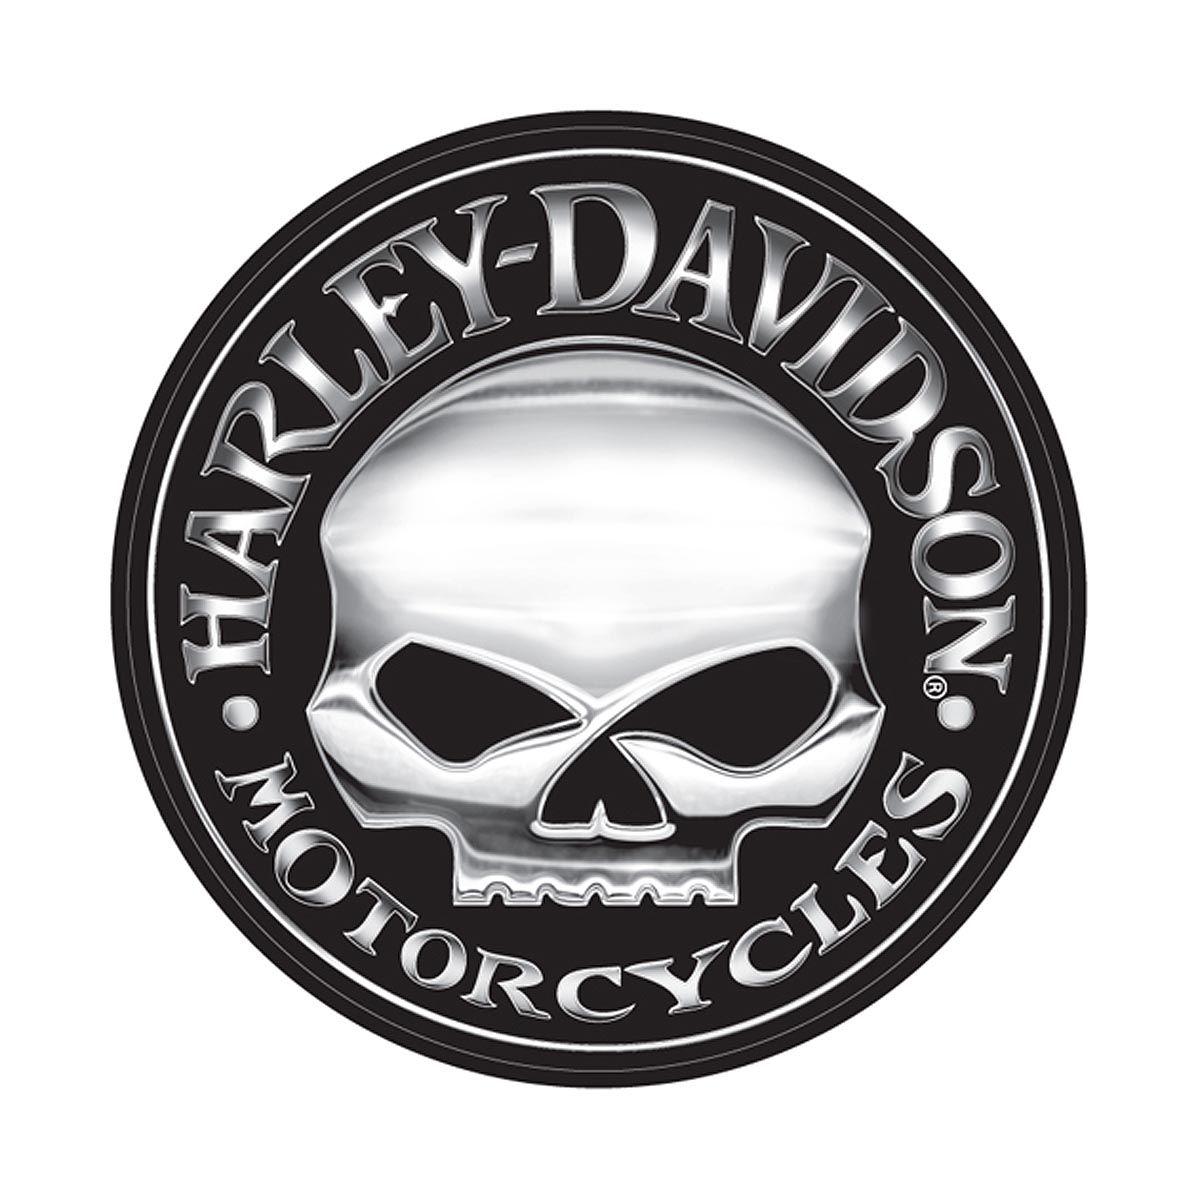 Willie G. for Harley Davidson Skull Logo wallpaper